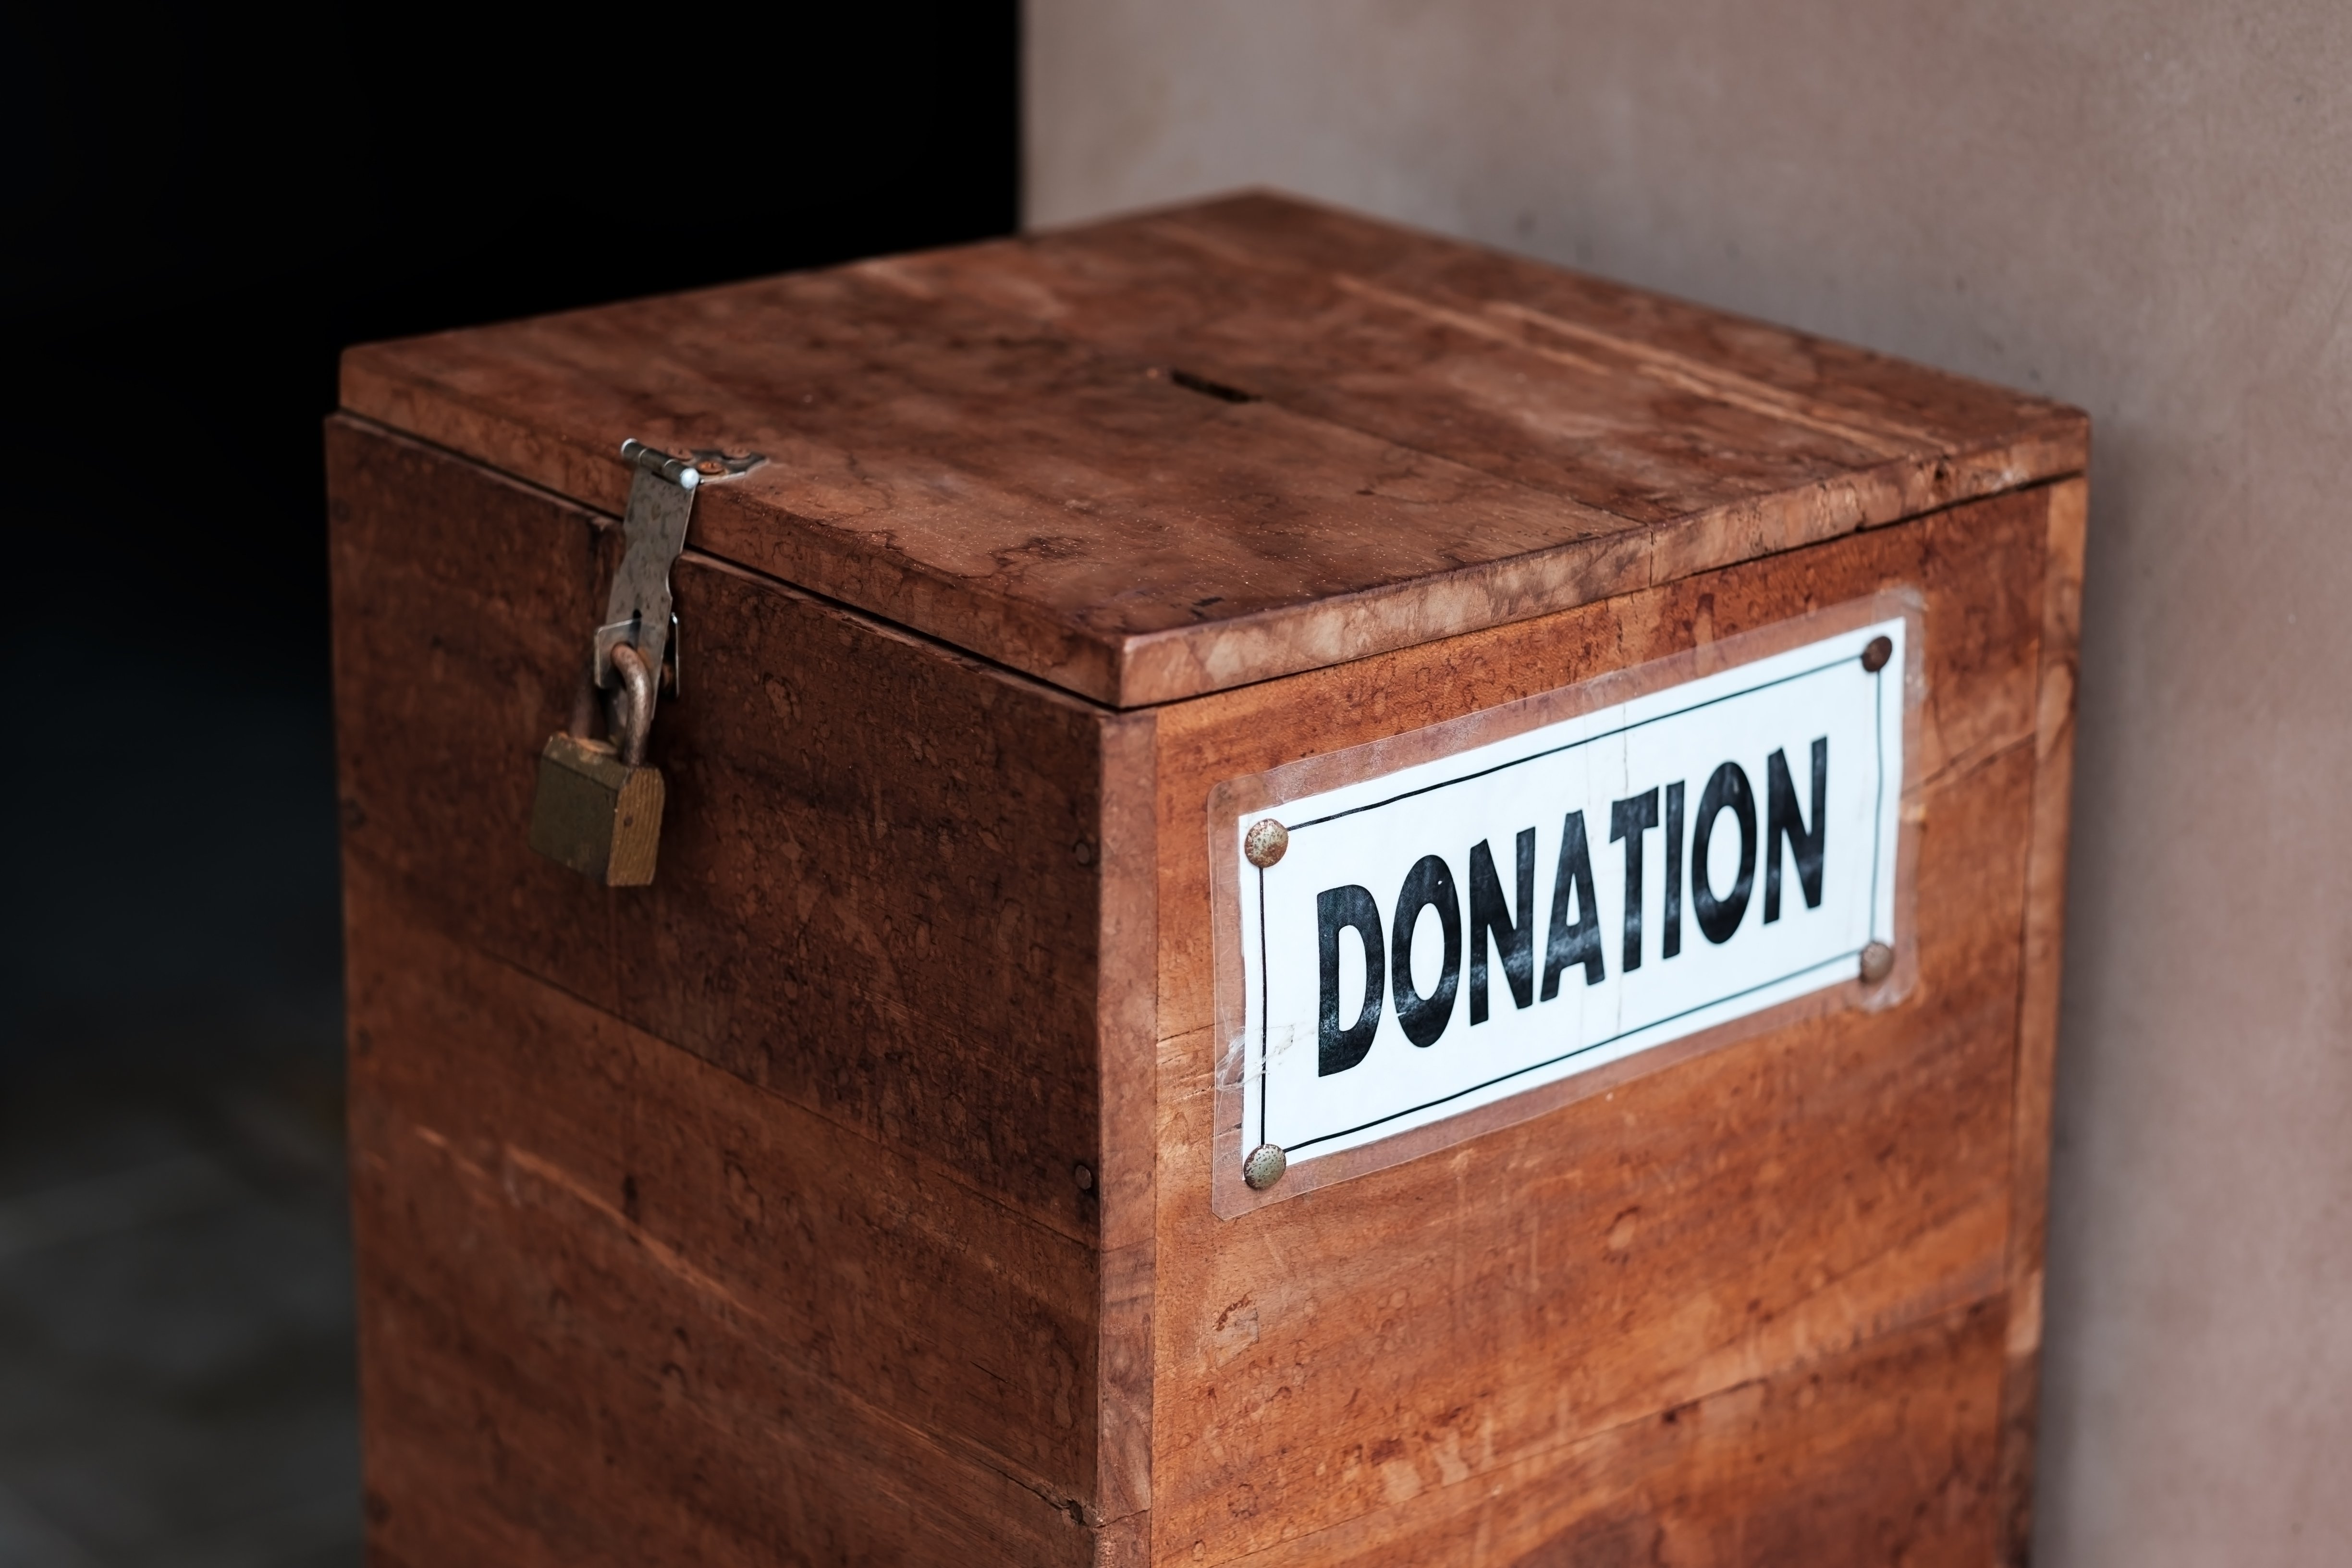 Donation box at church | Image credit: Pixabay